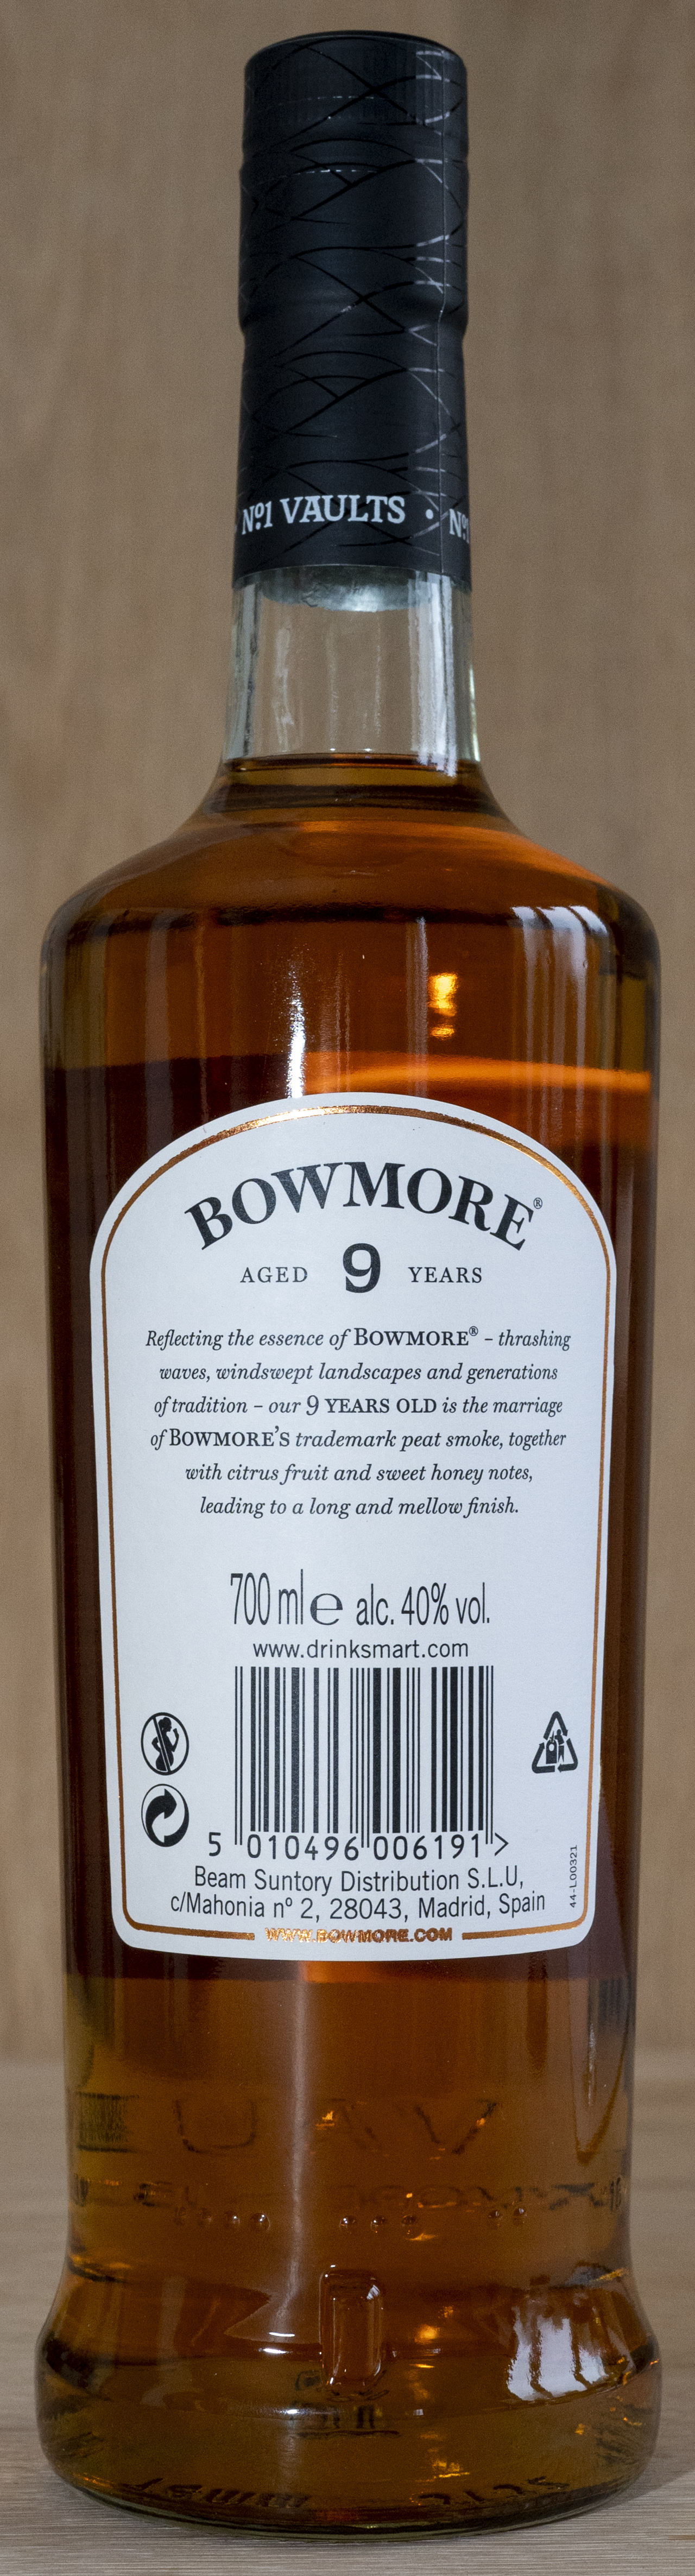 Billede: DSC_5671 - Bowmore 9 - bottle back.jpg